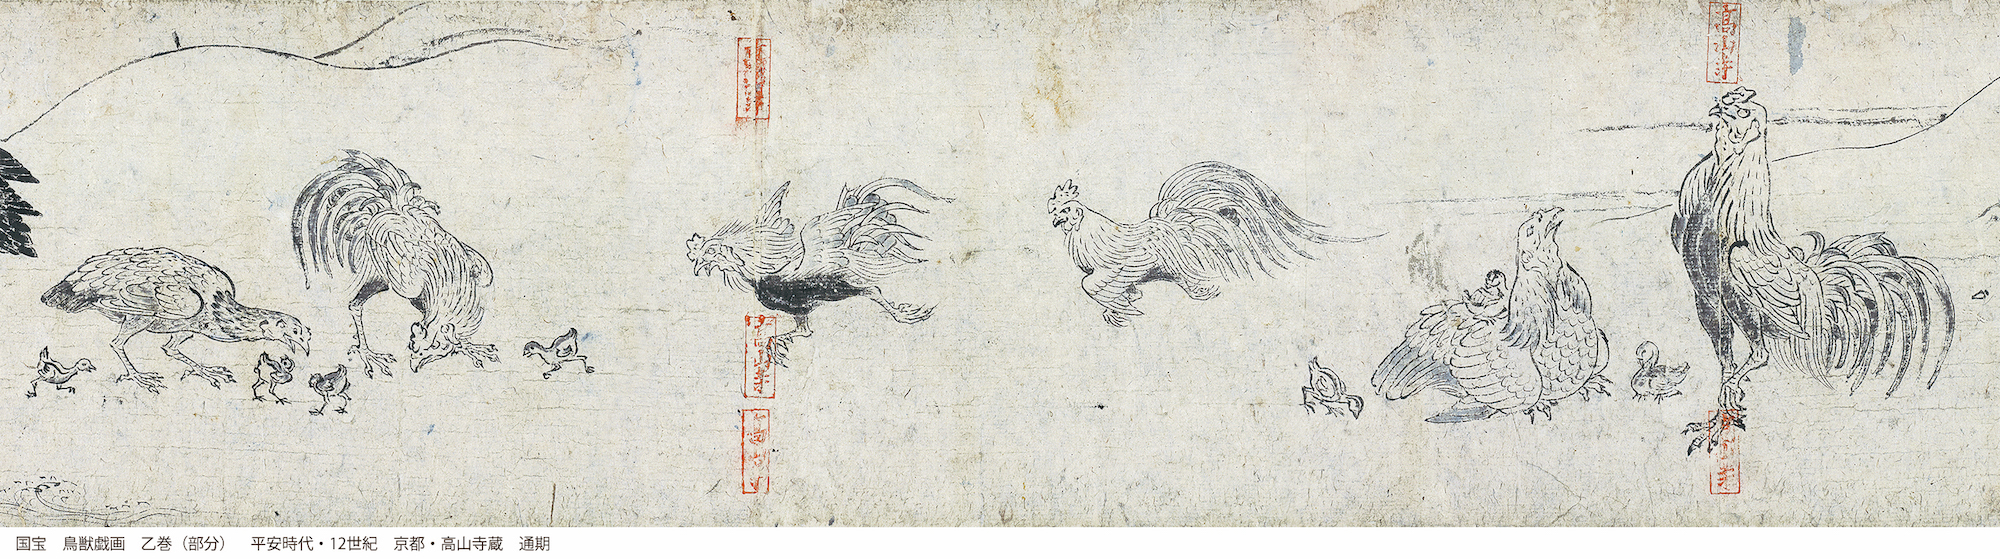 国宝　鳥獣戯画　乙巻（部分）　平安時代　12世紀　京都・高山寺　通期